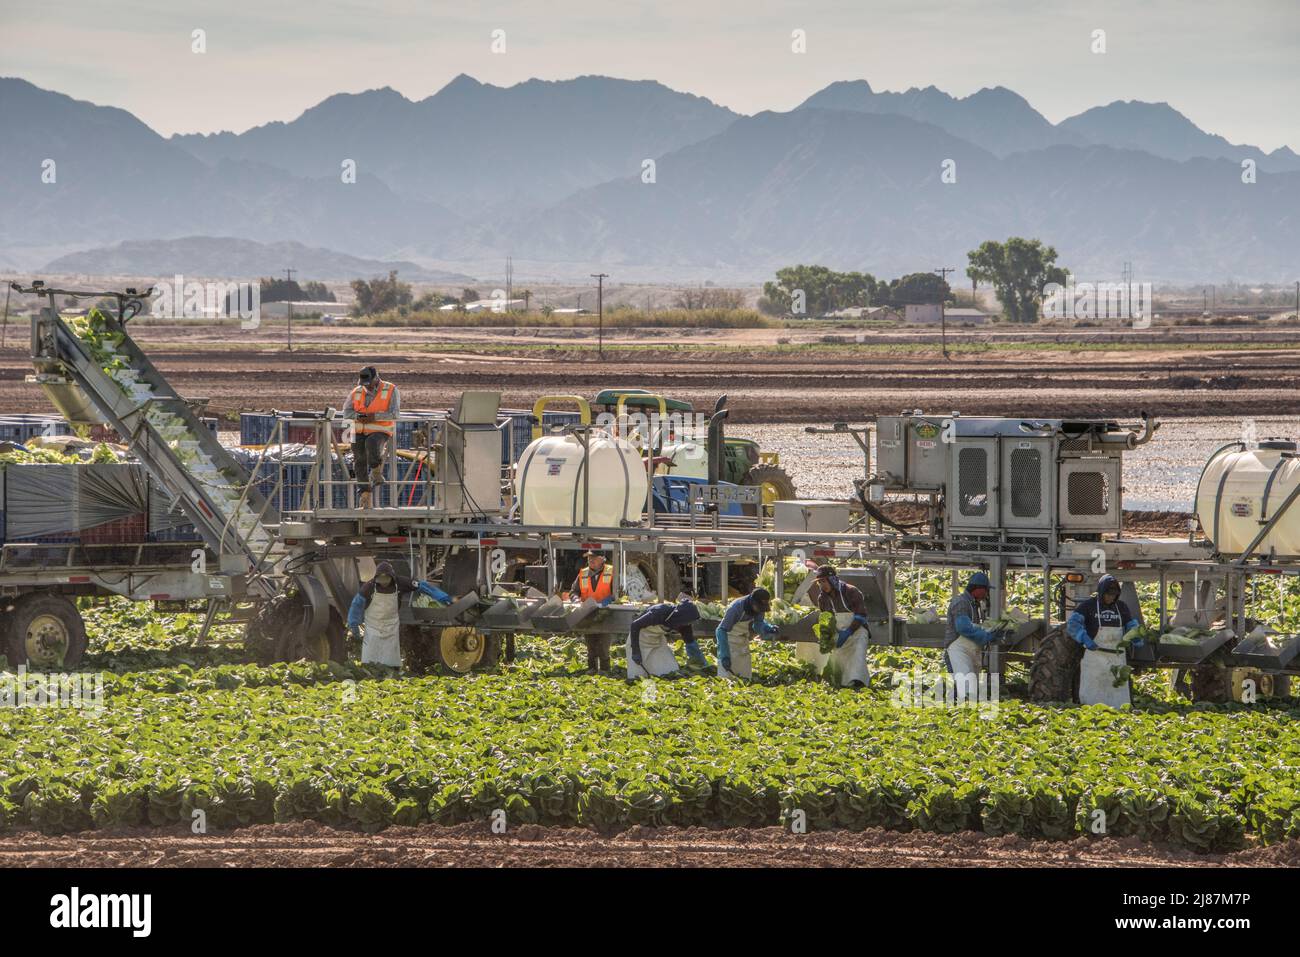 Travailleurs agricoles migrants récoltant du brocoli près de Yuma, Arizona, États-Unis. Banque D'Images